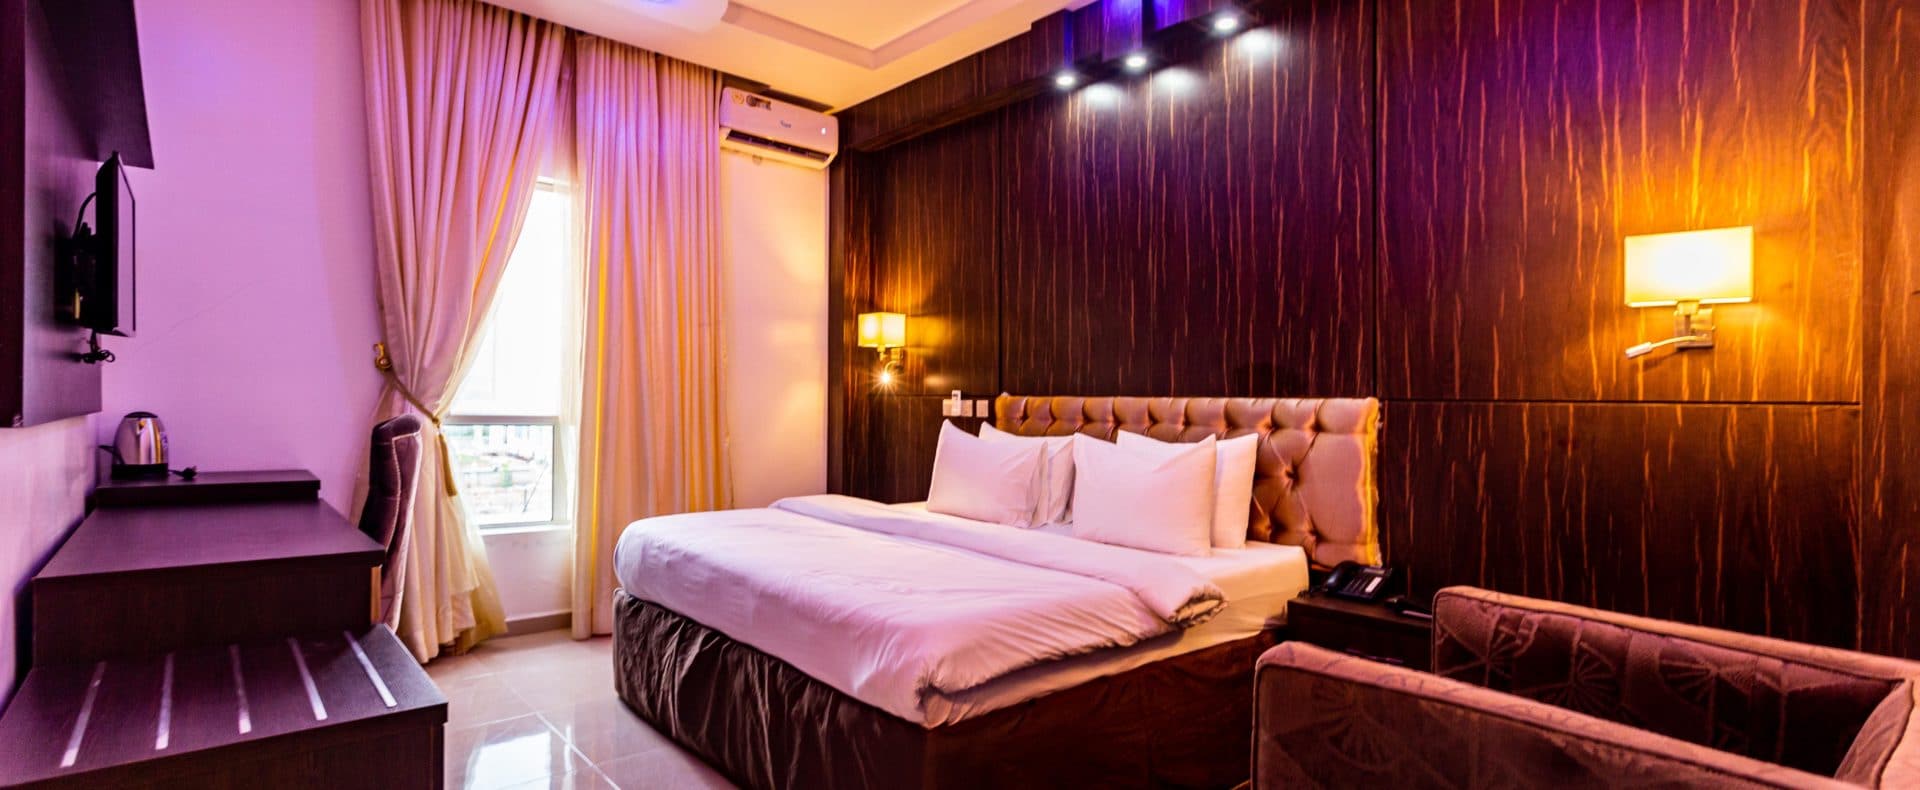 Hotel Gold Room In Owerri Imo Nigeria